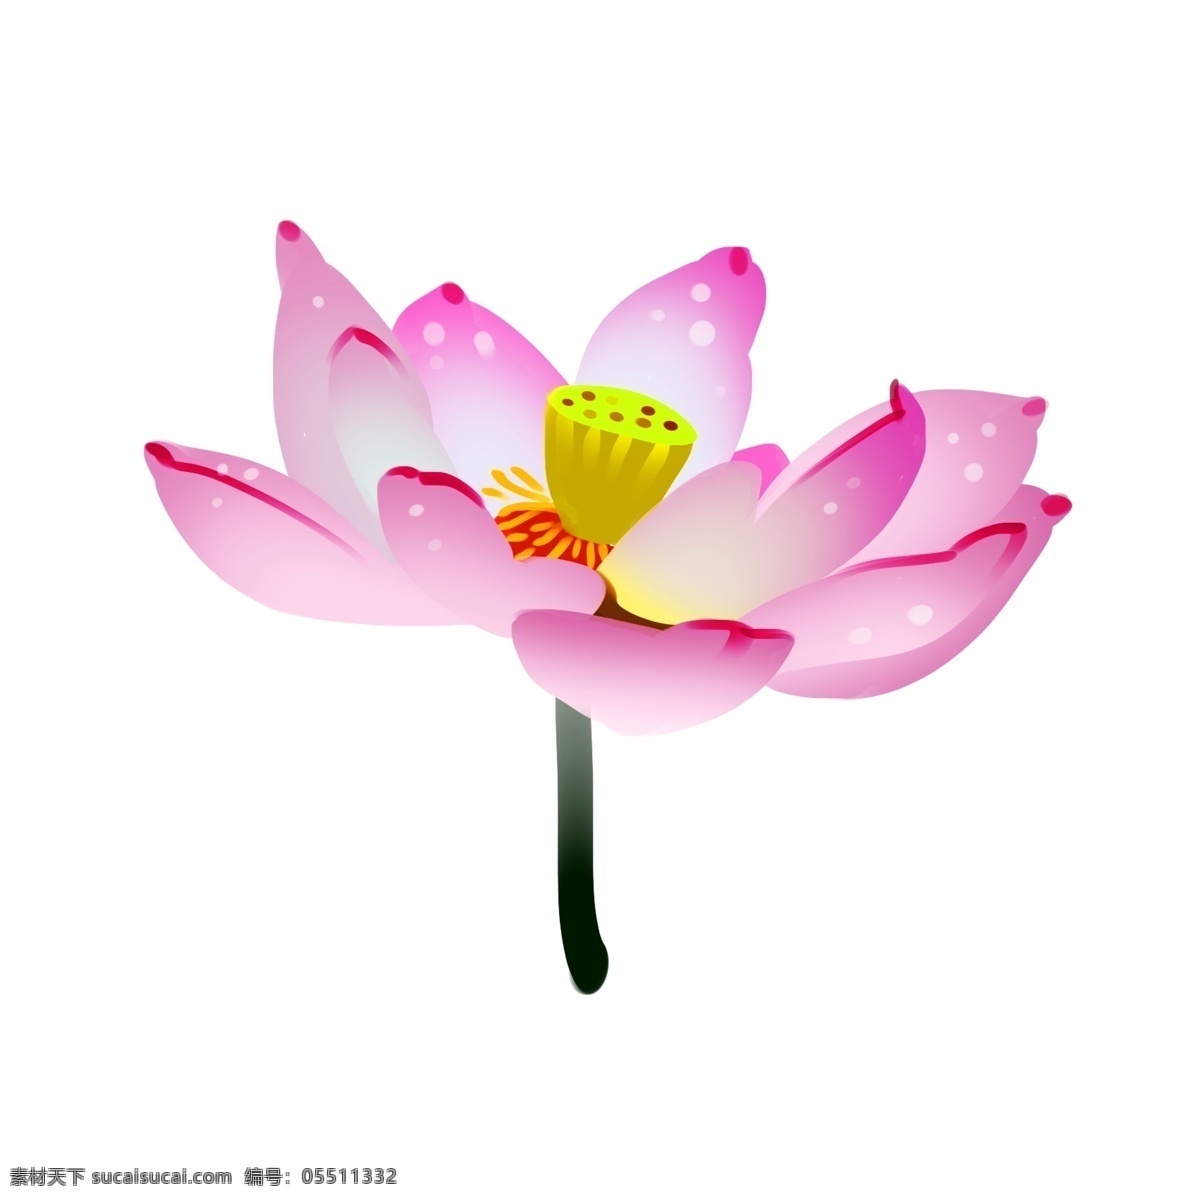 粉色 荷花 卡通 插画 粉色的荷花 卡通花朵 花卉 植物 一枝荷花 漂亮的荷花 荷花装饰插画 鲜花 春天荷花